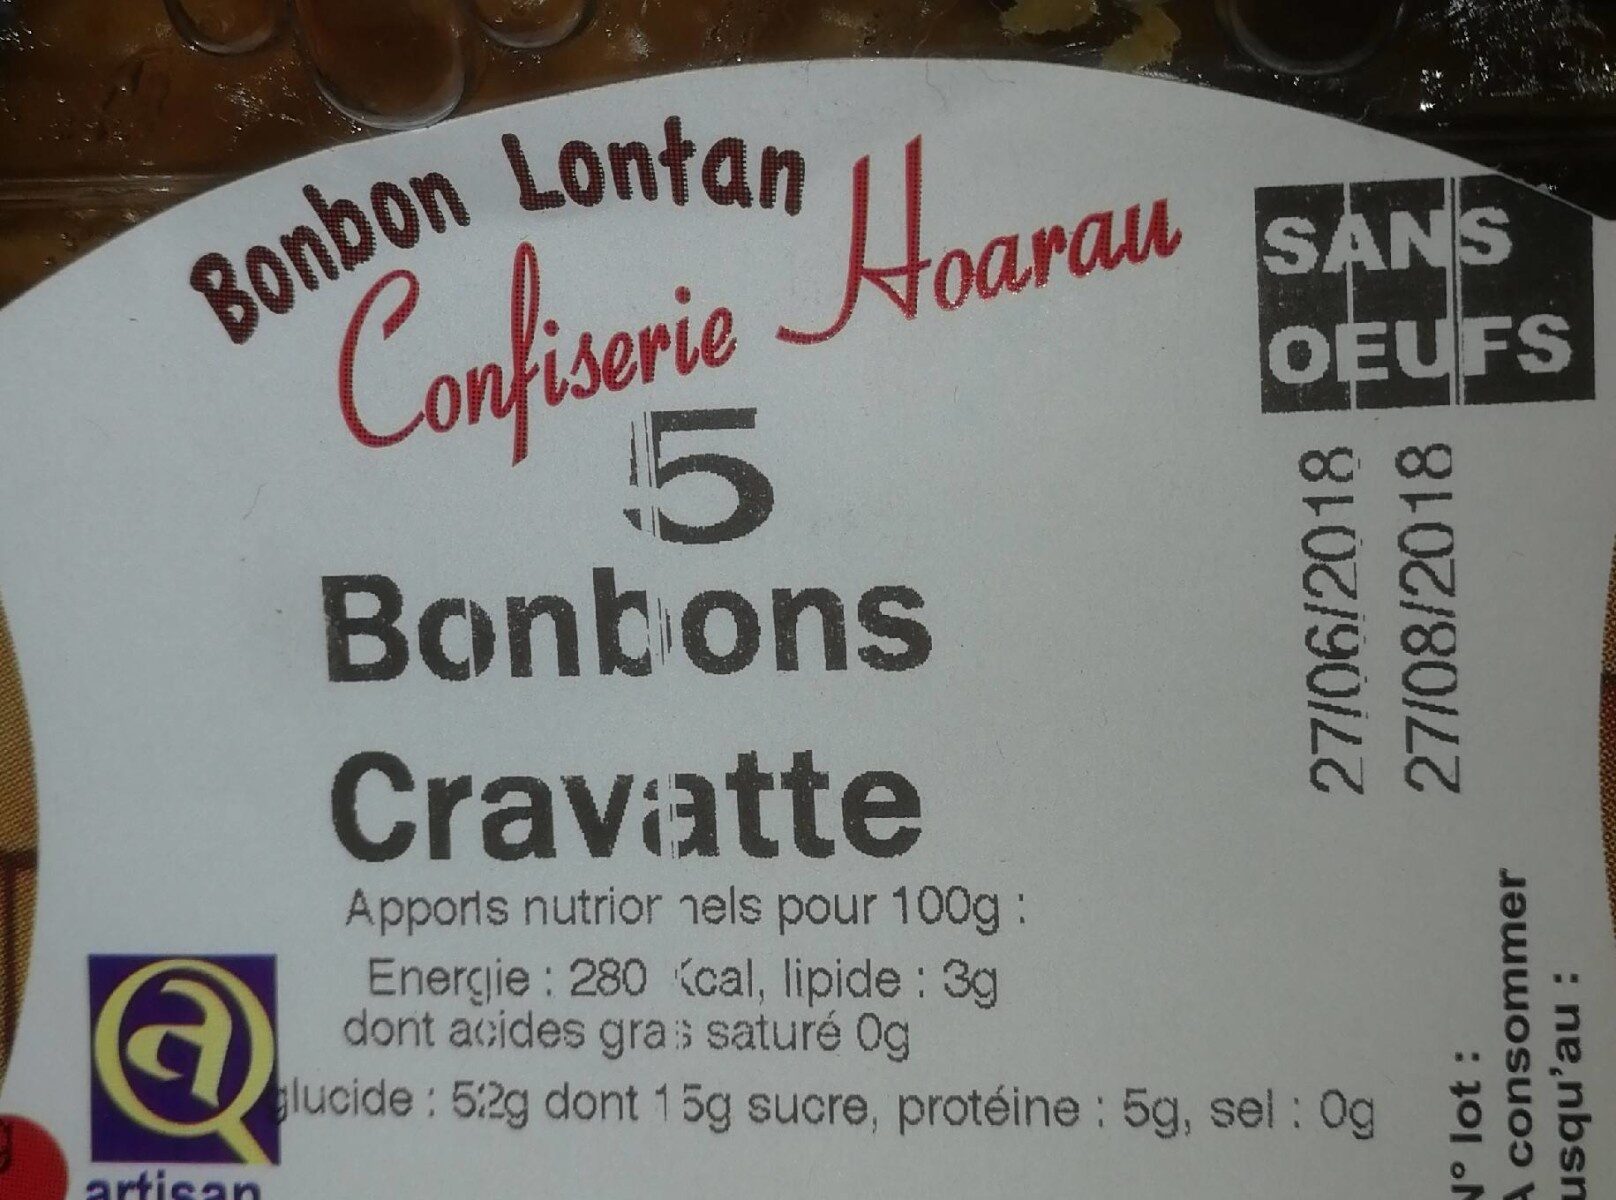 Bonbons cravatte - Nutrition facts - fr